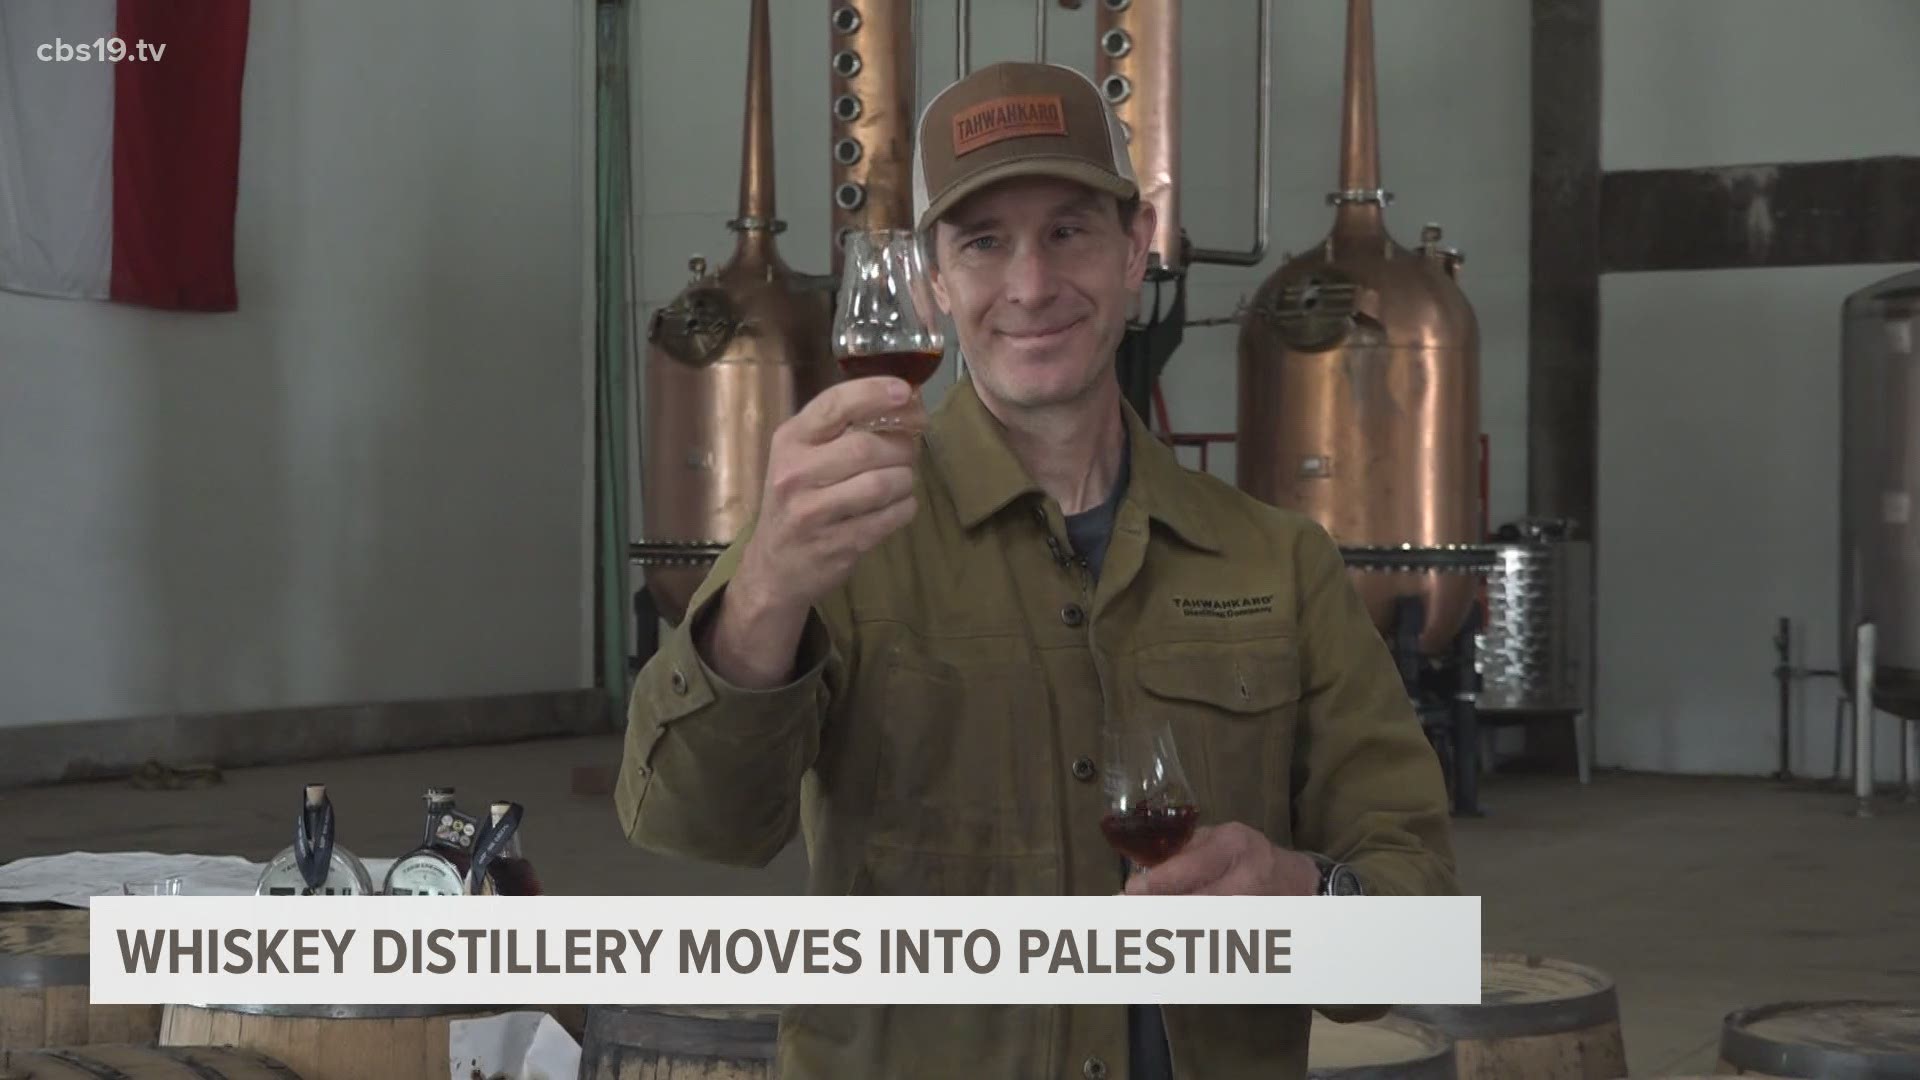 Inside look at TahWahKaro Whiskey distillery in Palestine